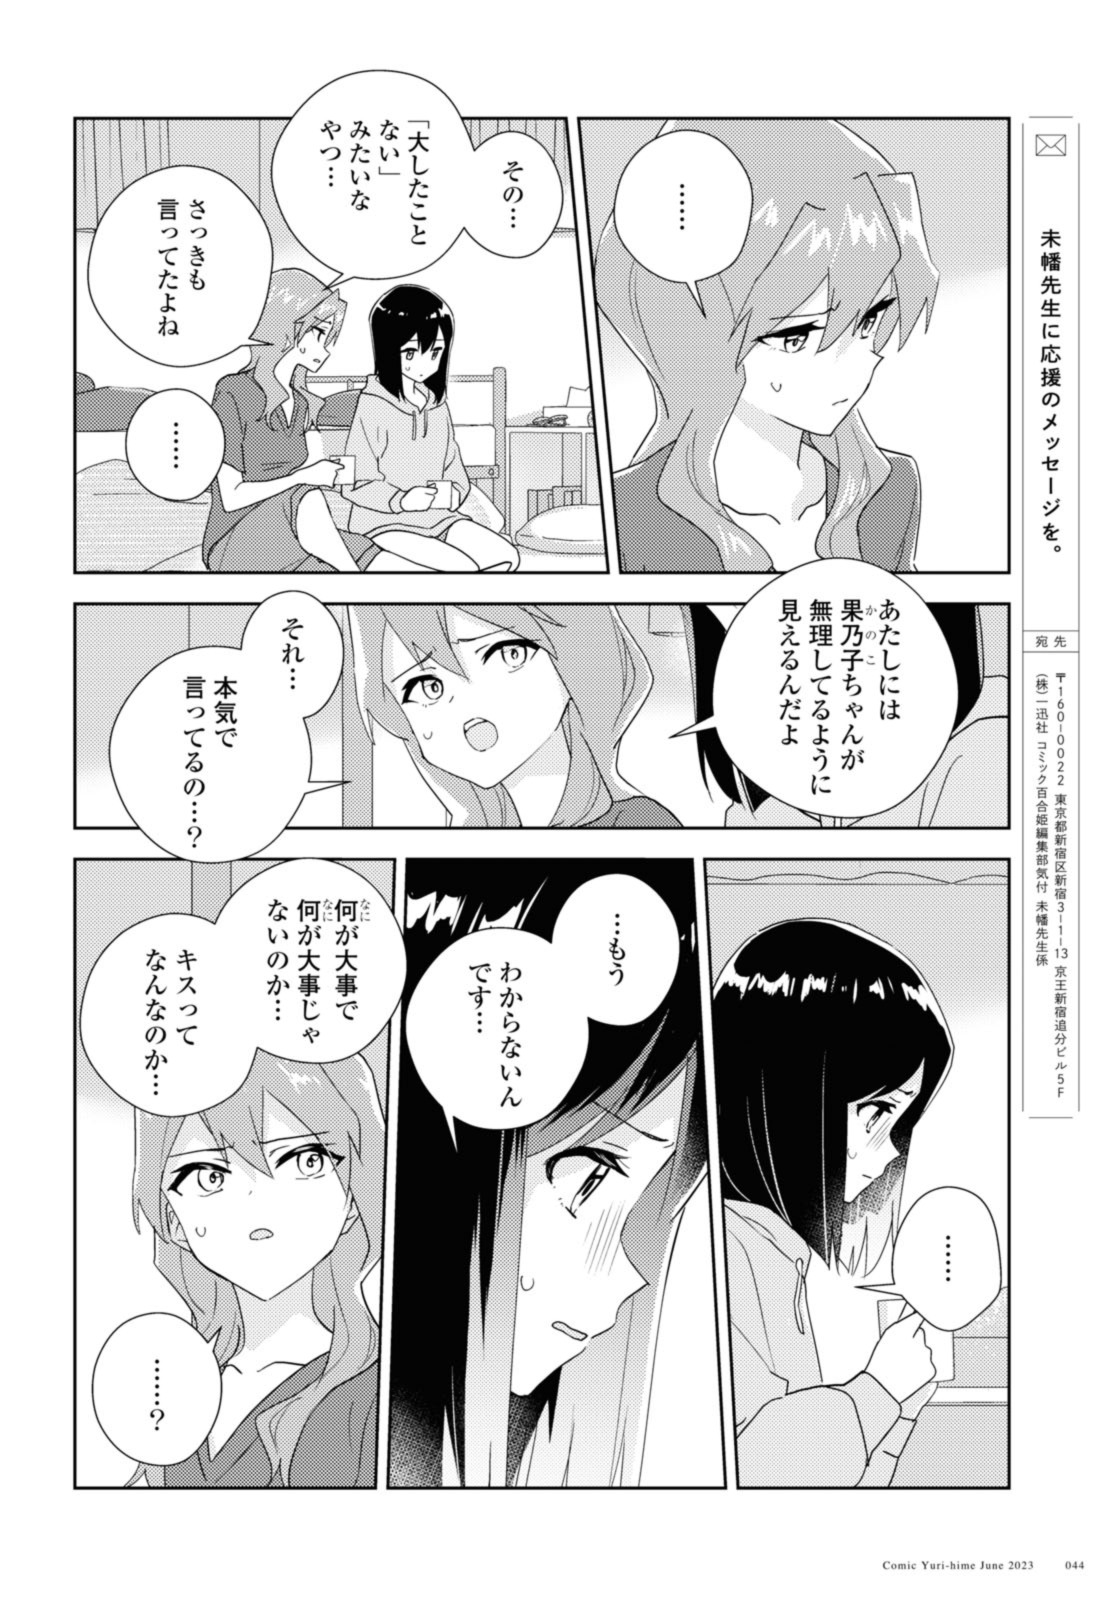 Watashi no yuri wa oshigotodesu! - Chapter 61 - Page 6